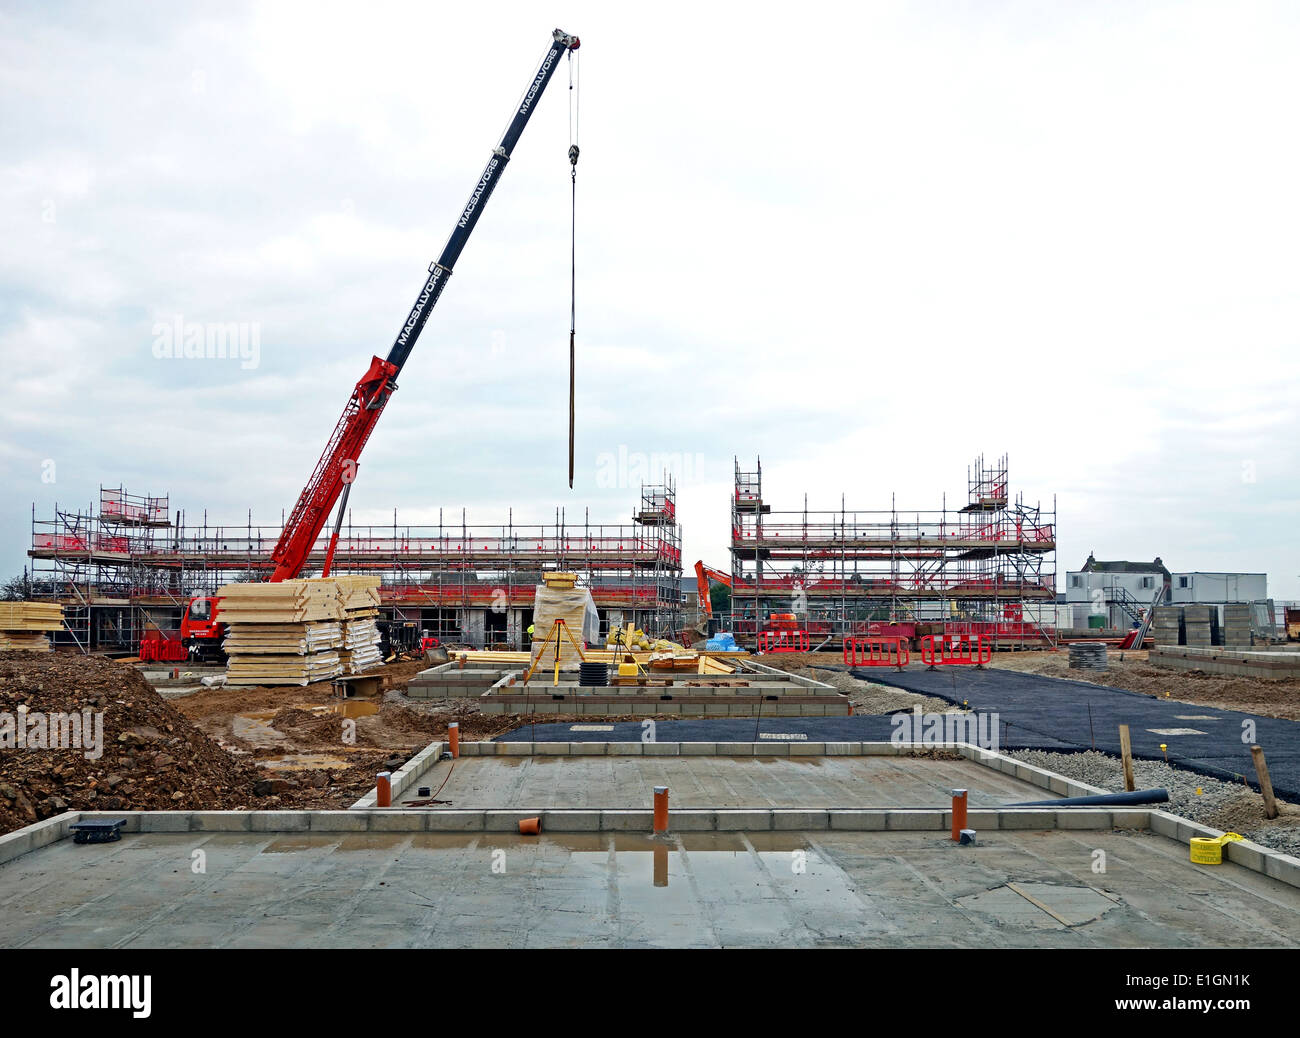 Un nouveau développement du logement abordable en construction à Redruth, Cornwall, UK Banque D'Images